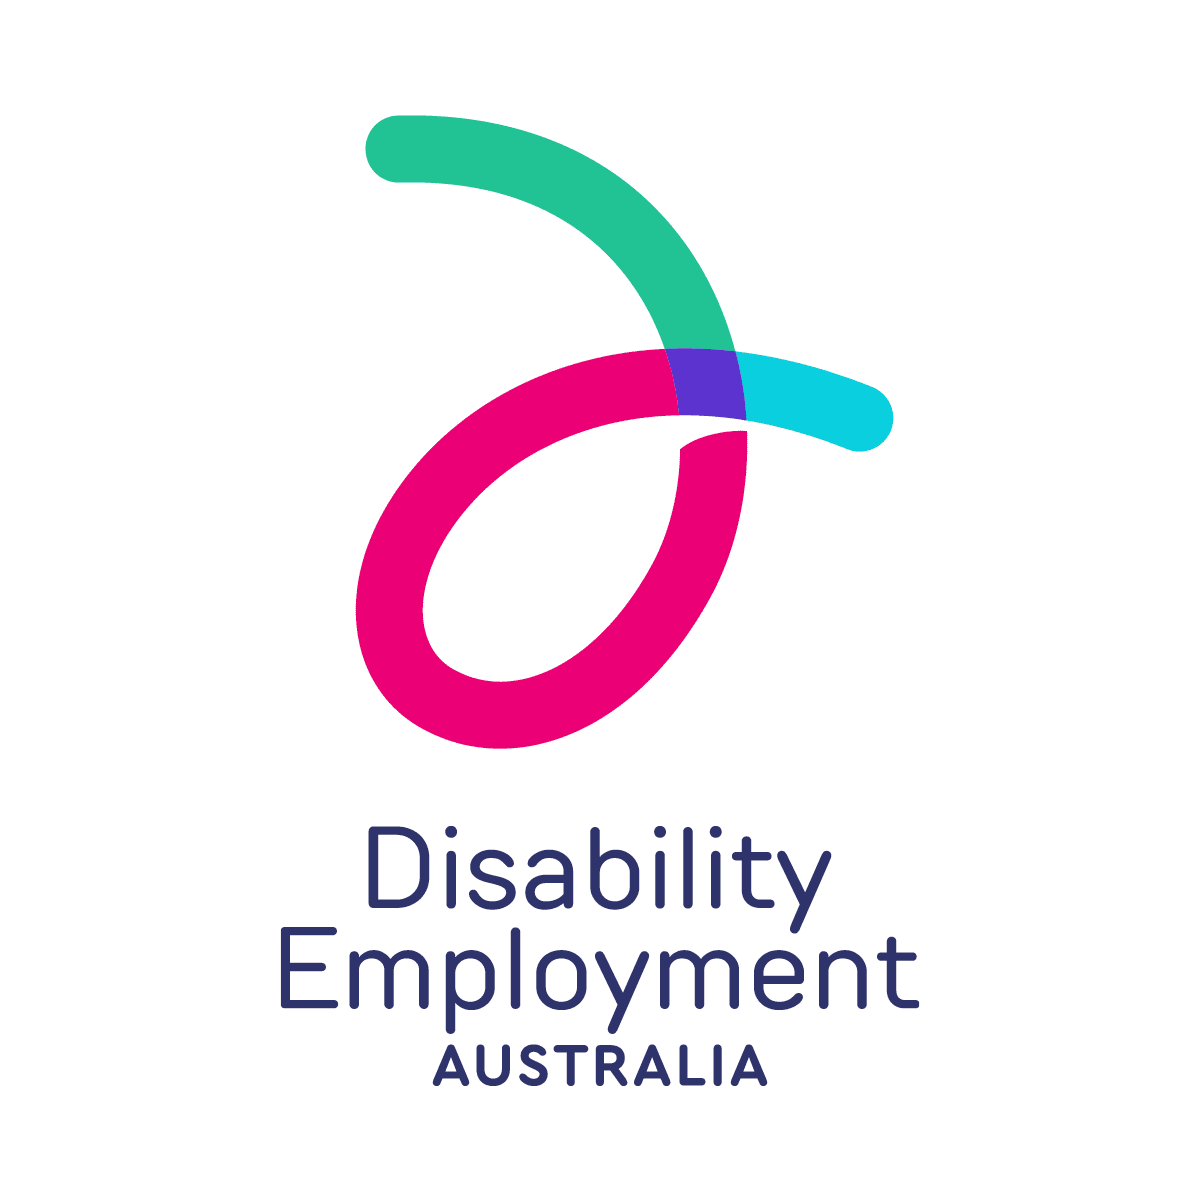 Disability employment Australia logo